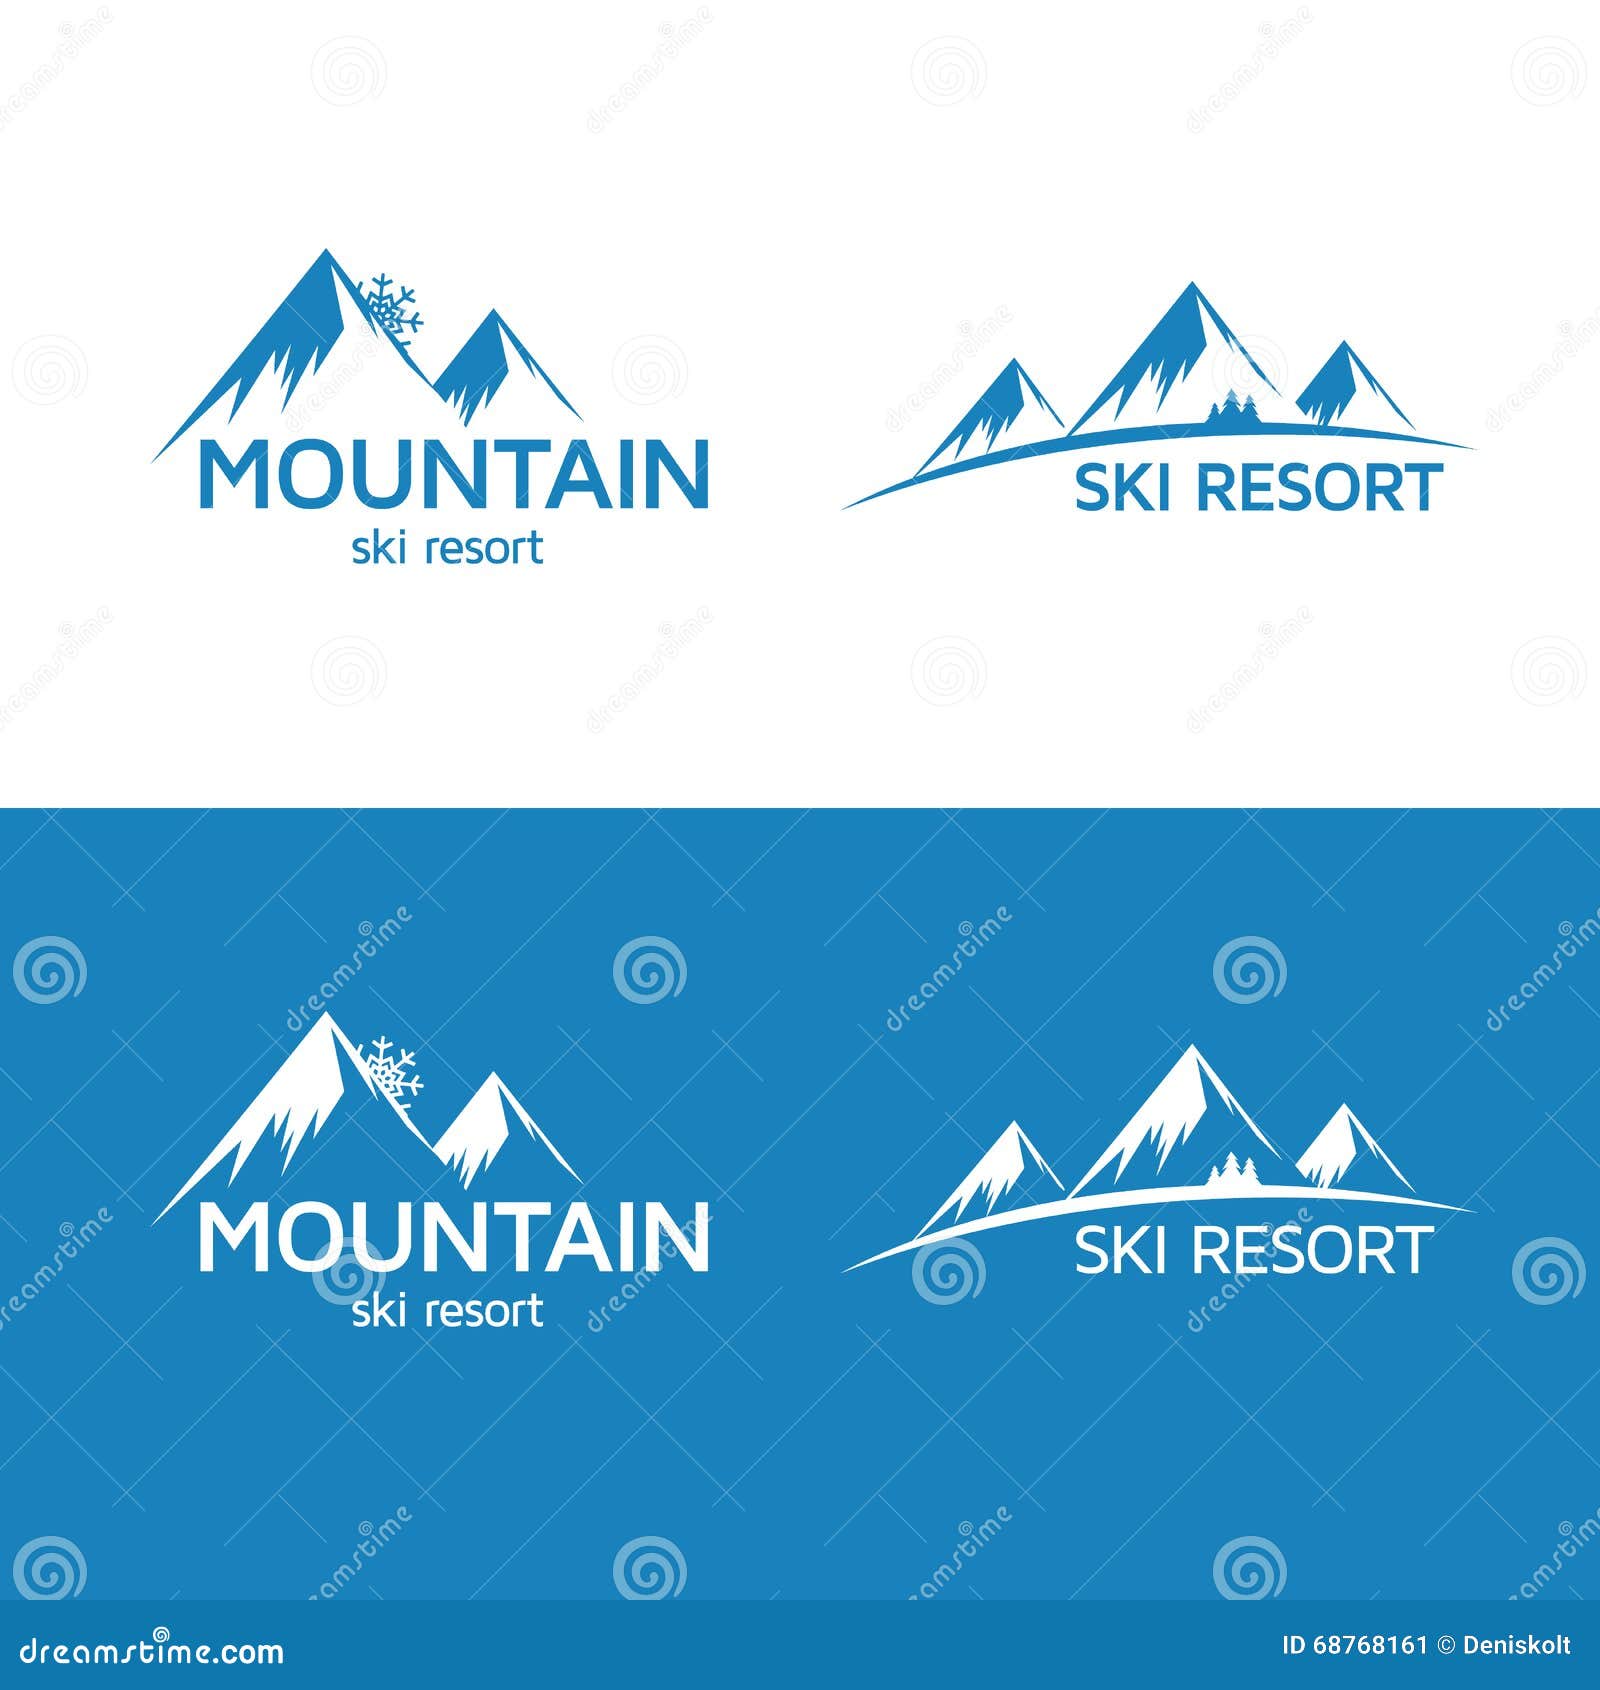 Resort Logo Vector Illustration | CartoonDealer.com #13610906